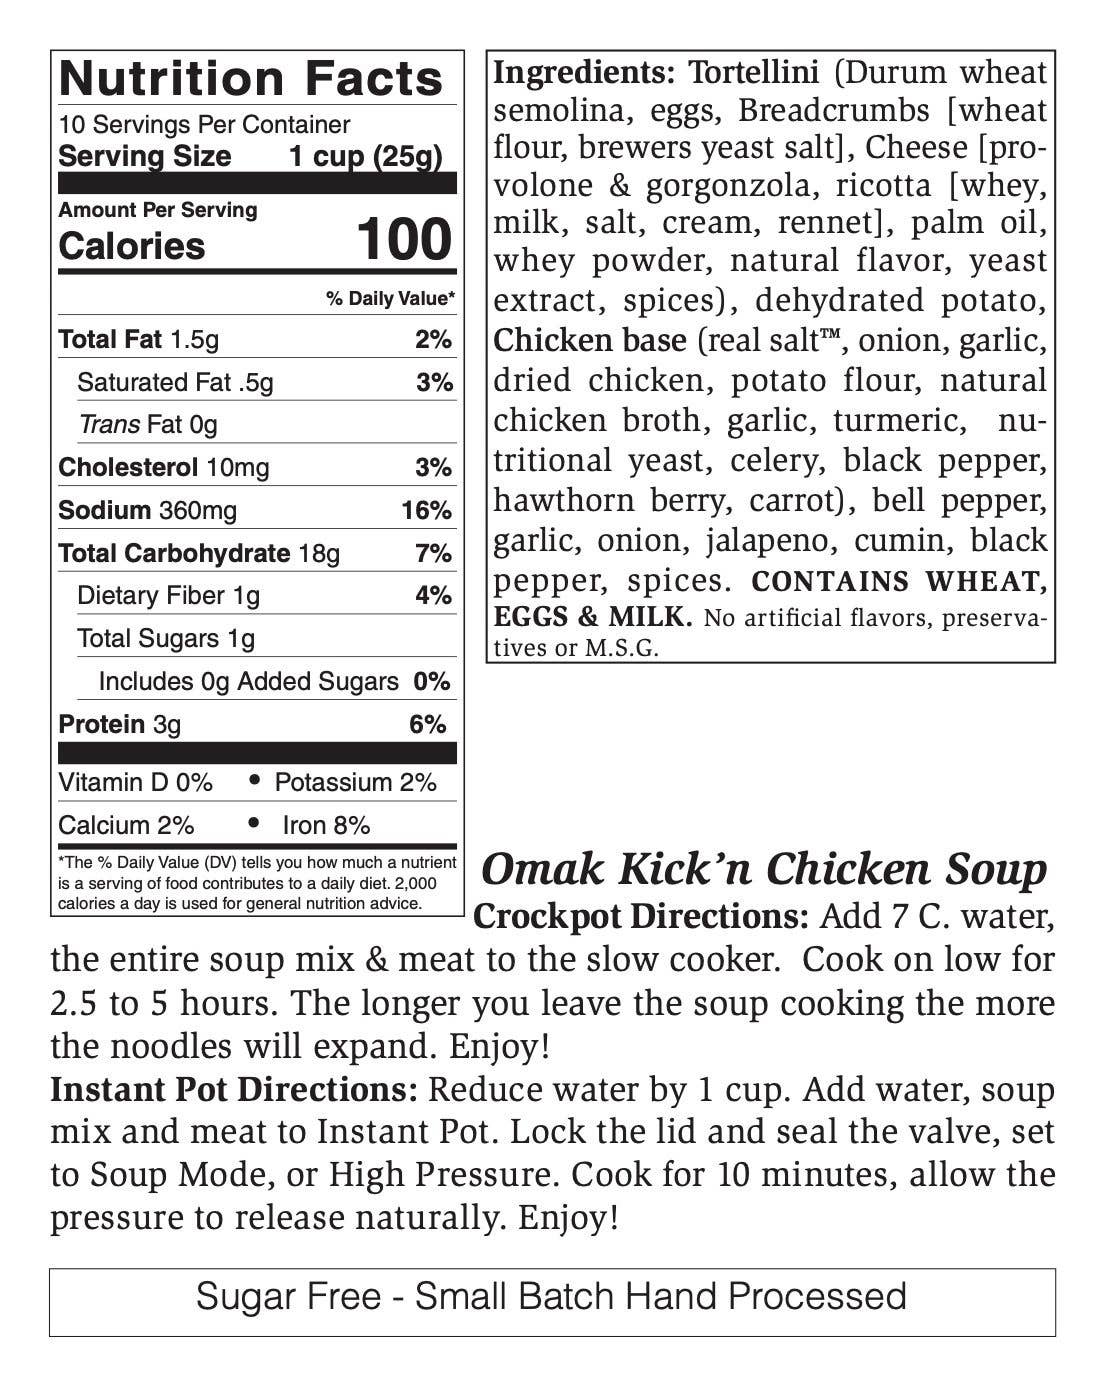 Omak Kick'n Chicken Soup Mix